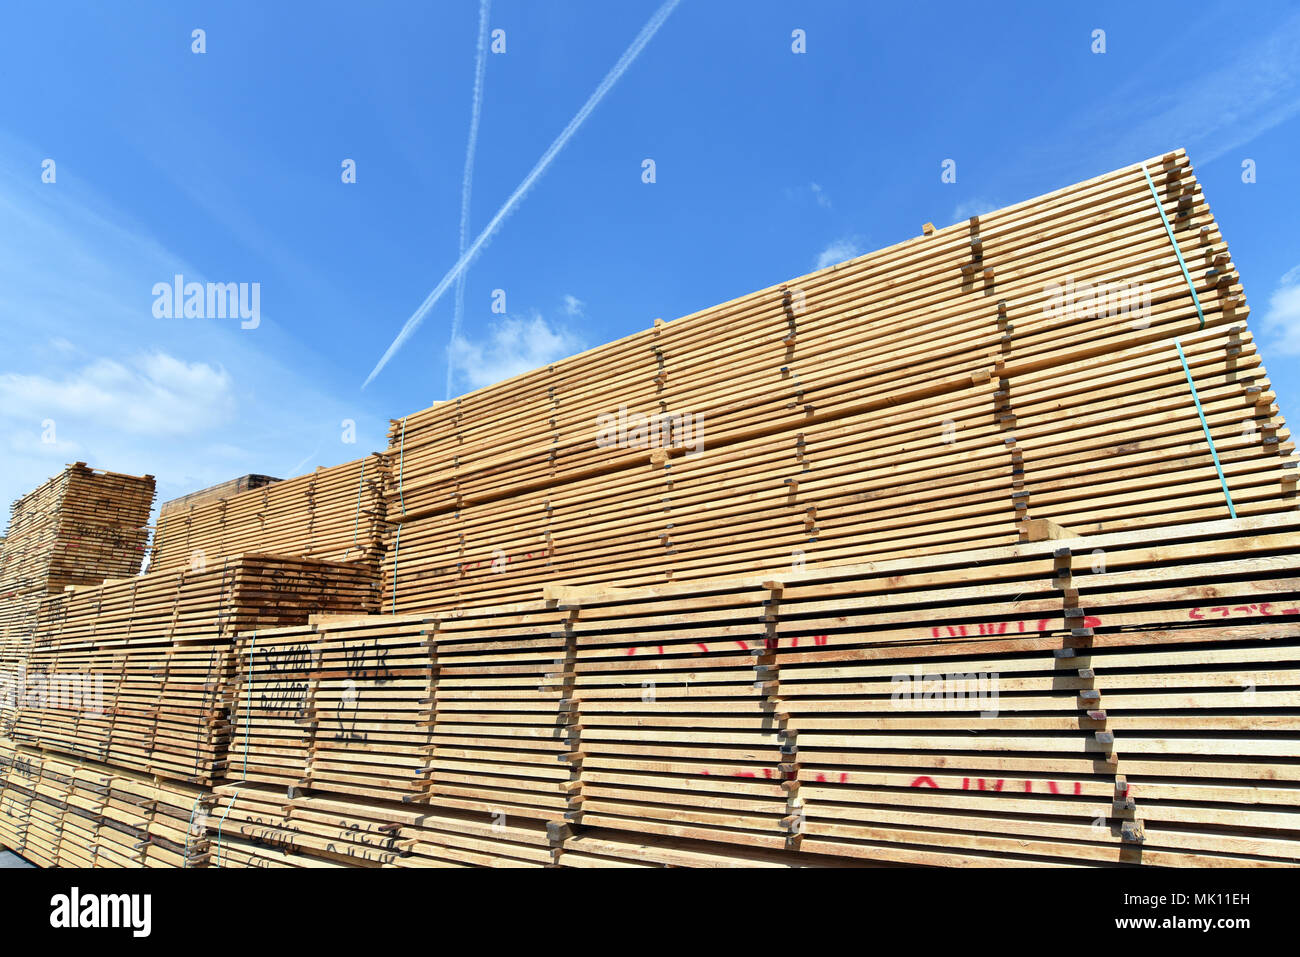 Usine de scierie - stockage de planches en bois Banque D'Images